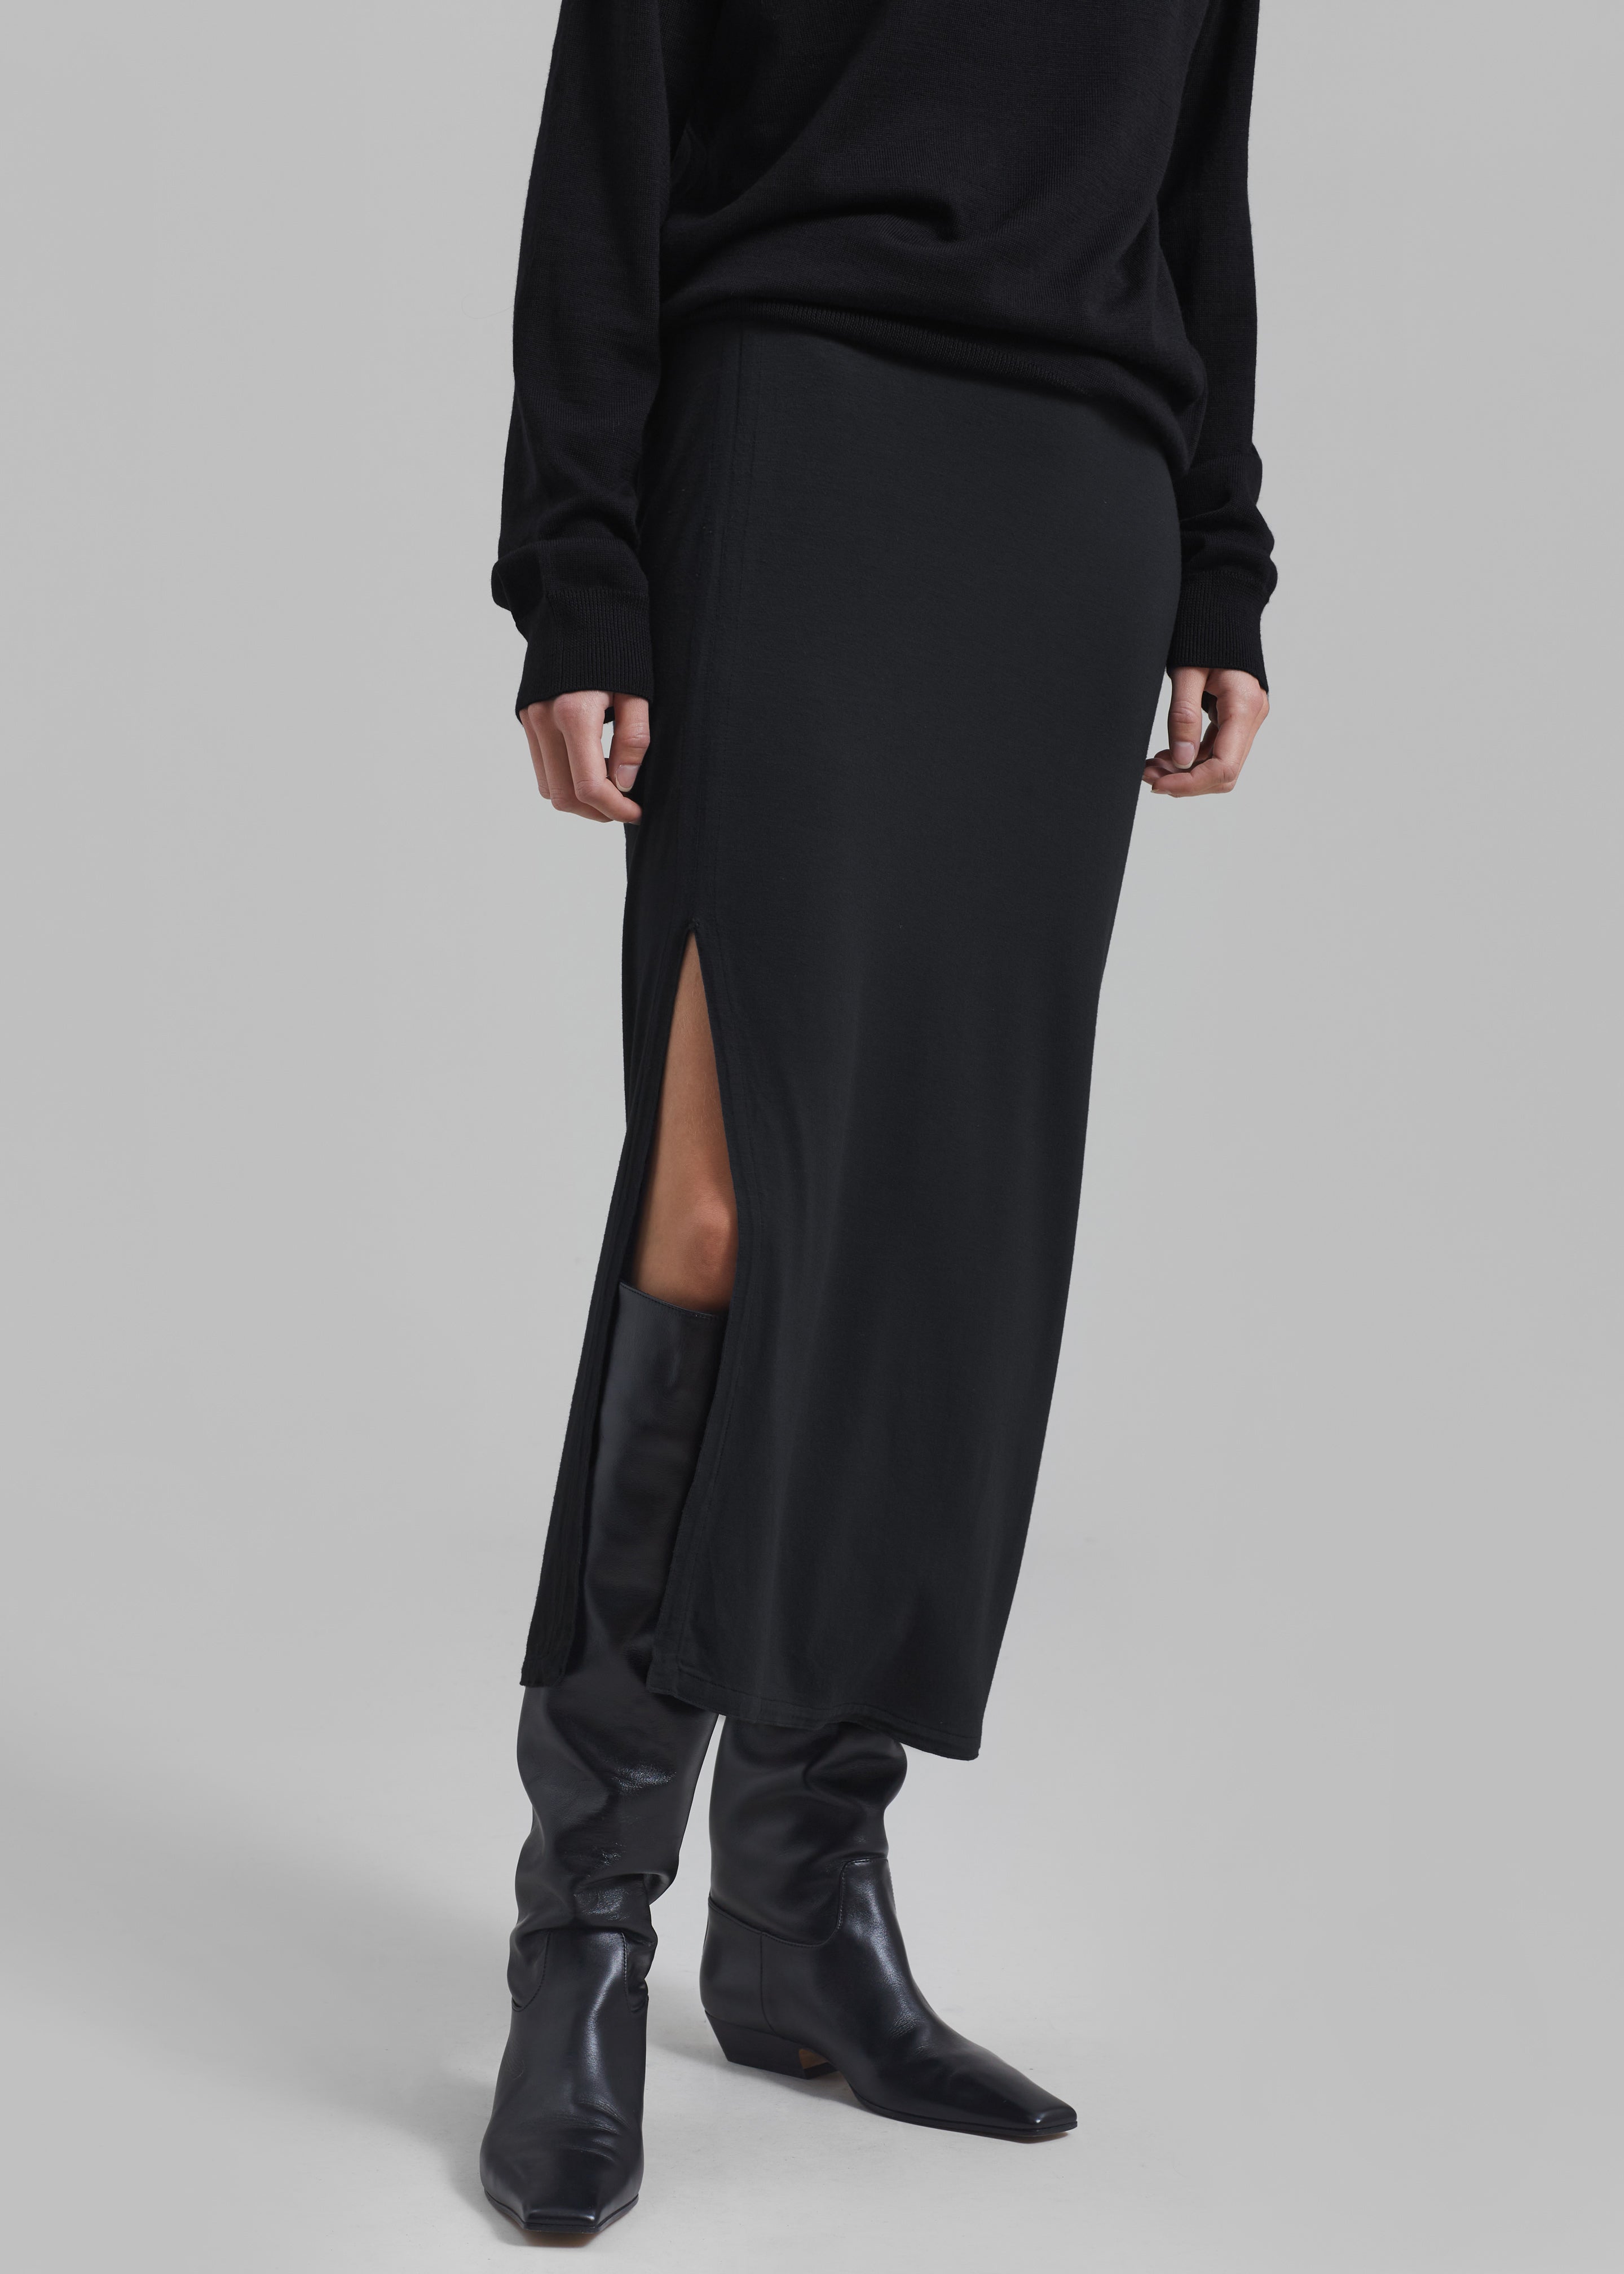 Abigail Side Slit Maxi Skirt - Black - 5